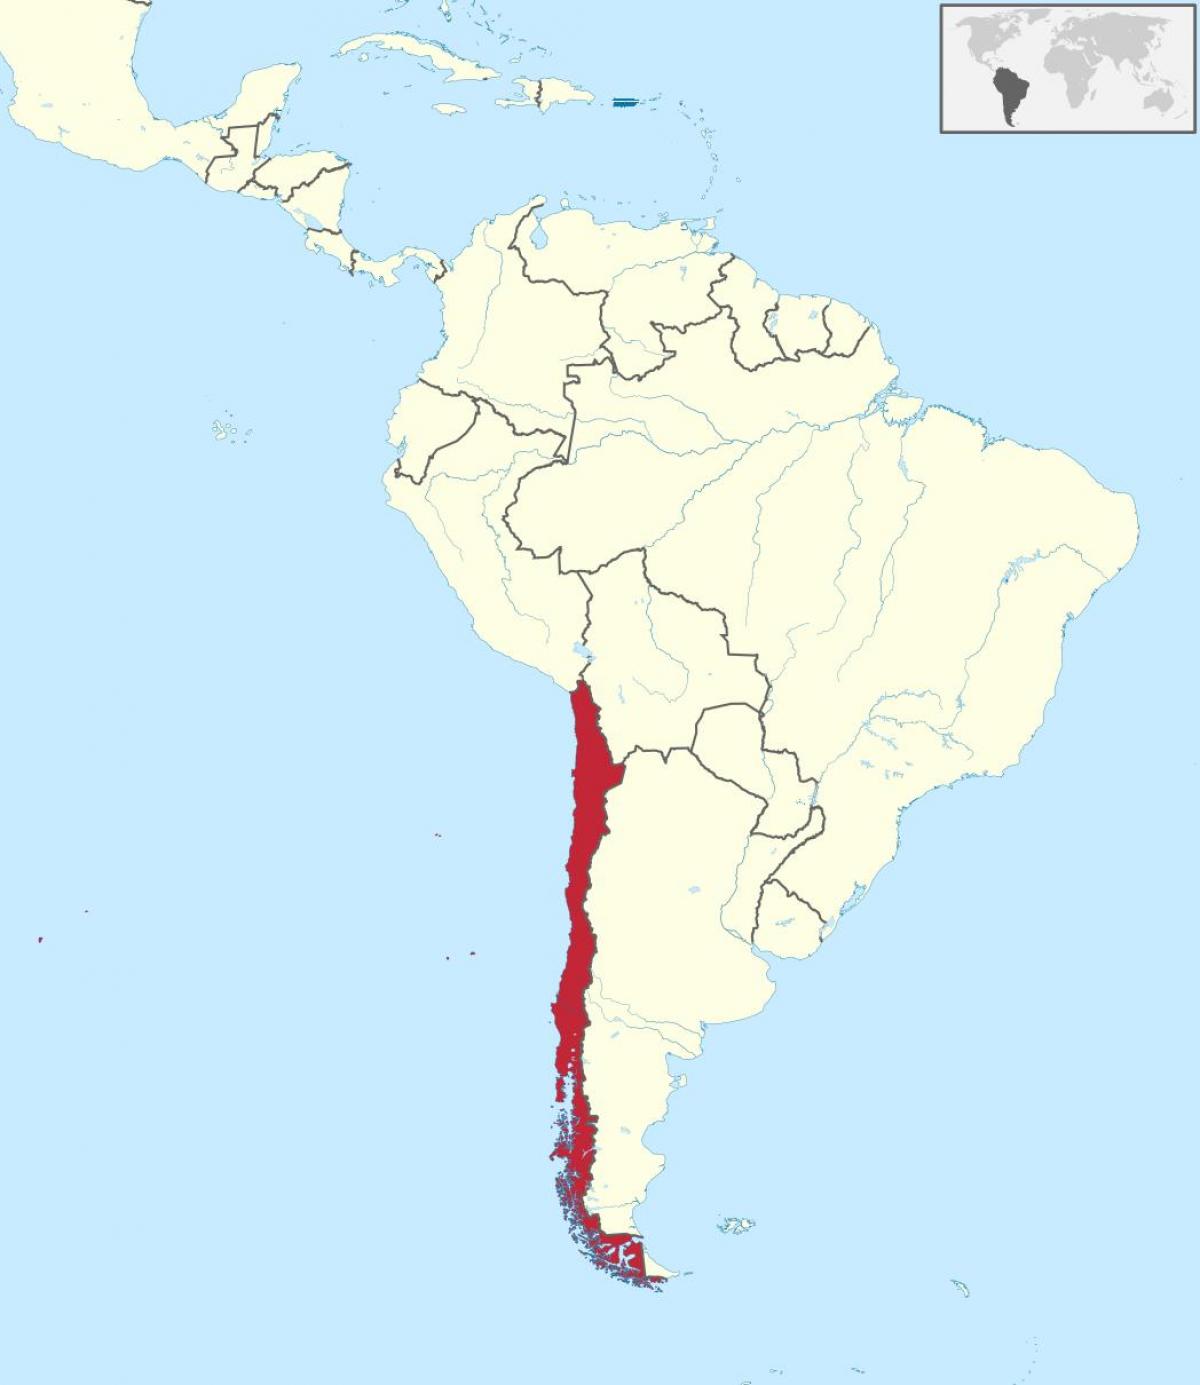 Chile di amerika selatan peta